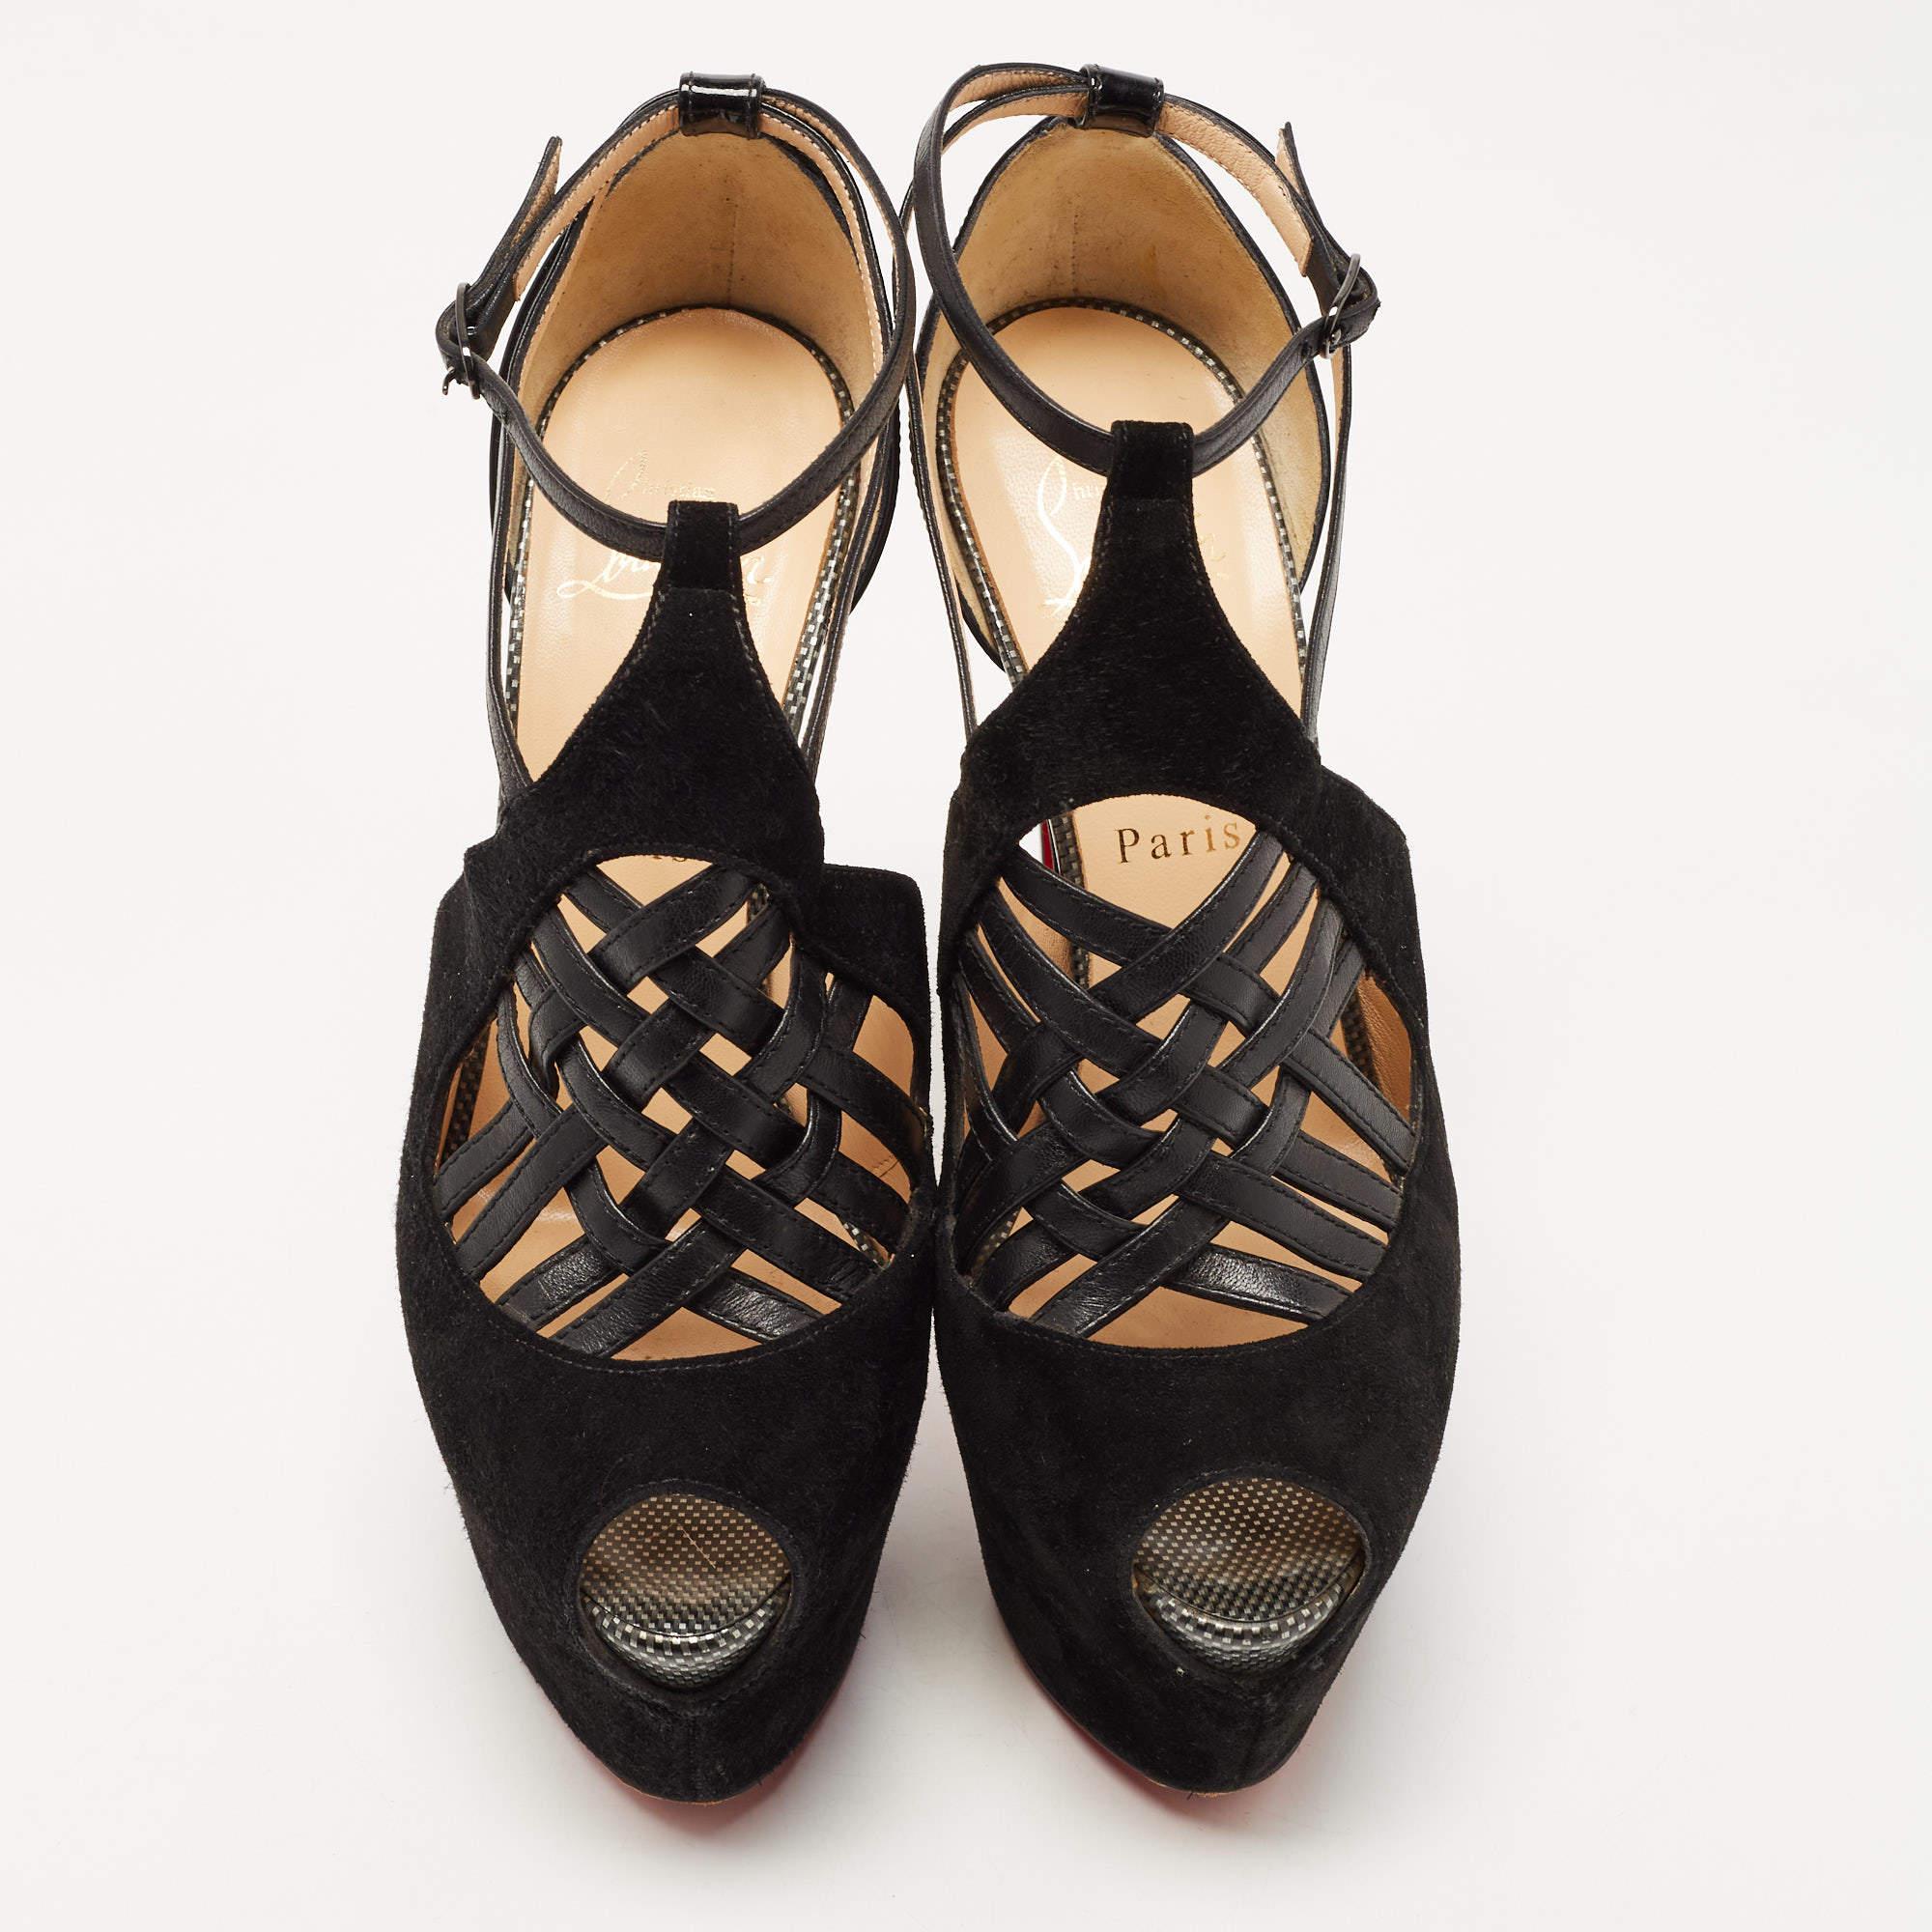 Ces sandales encadreront vos pieds de manière élégante. Fabriquées à partir de matériaux de qualité, elles arborent une présentation élégante, des semelles intérieures confortables et des talons durables.

